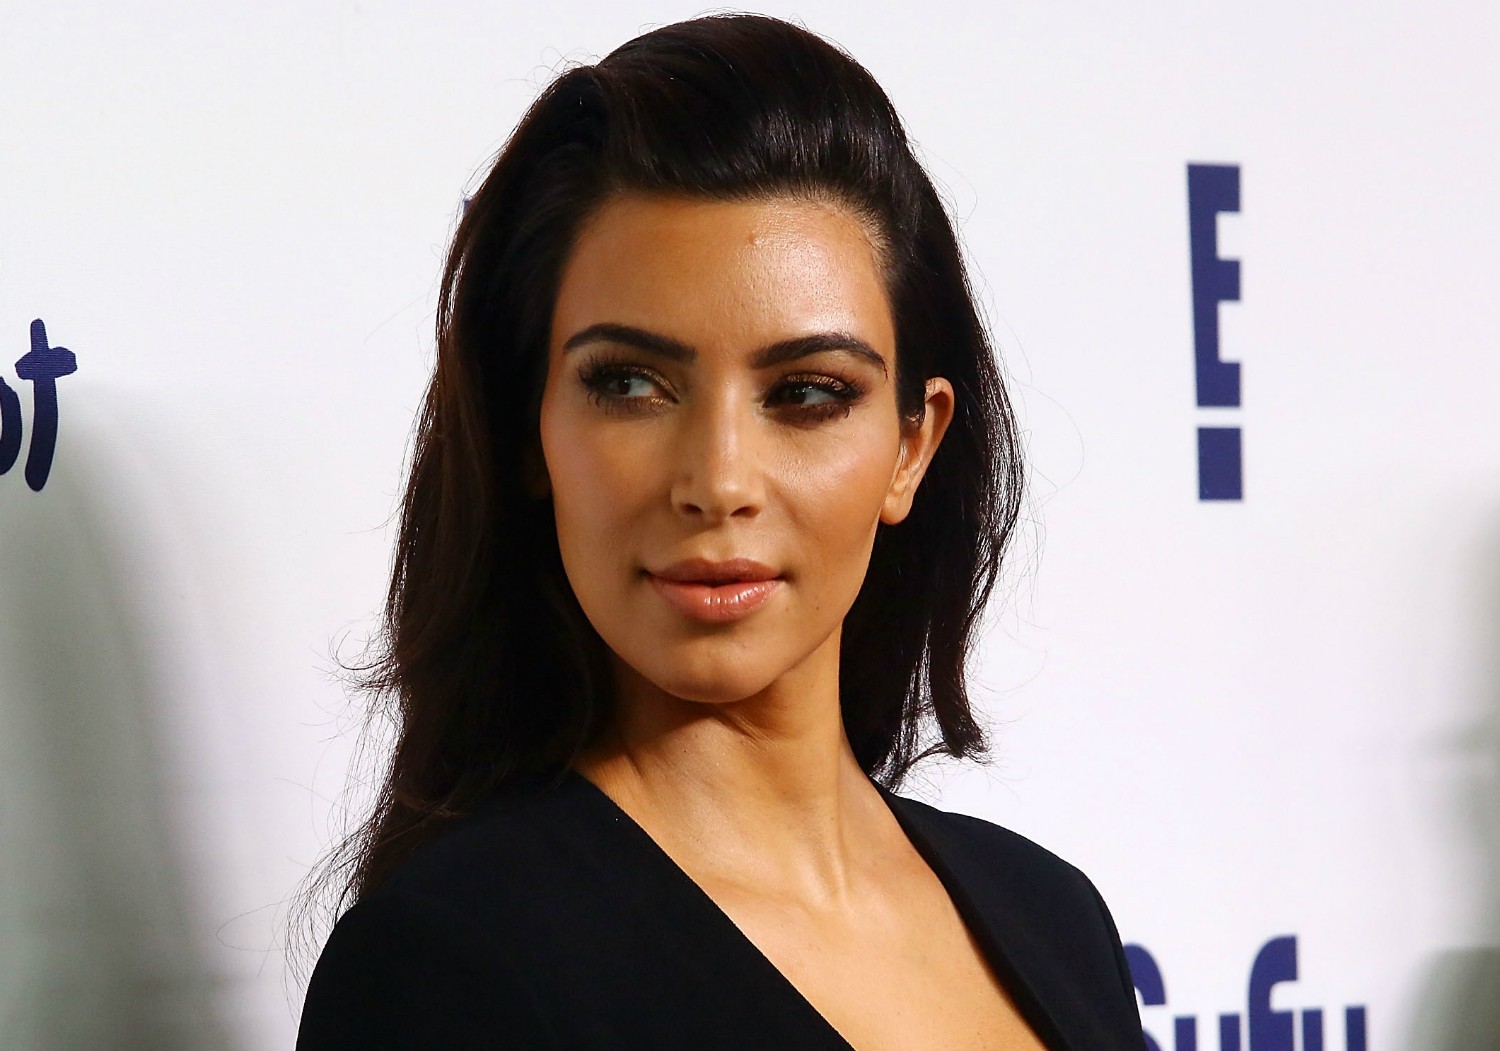 A socialite Kim Kardashian ganhou fama expondo sua intimidade em uma sex tape e em reality shows sobre sua família. Ela está com 33 anos, e desde os 12, depilava completamente a região íntima. (Foto: Getty Images)